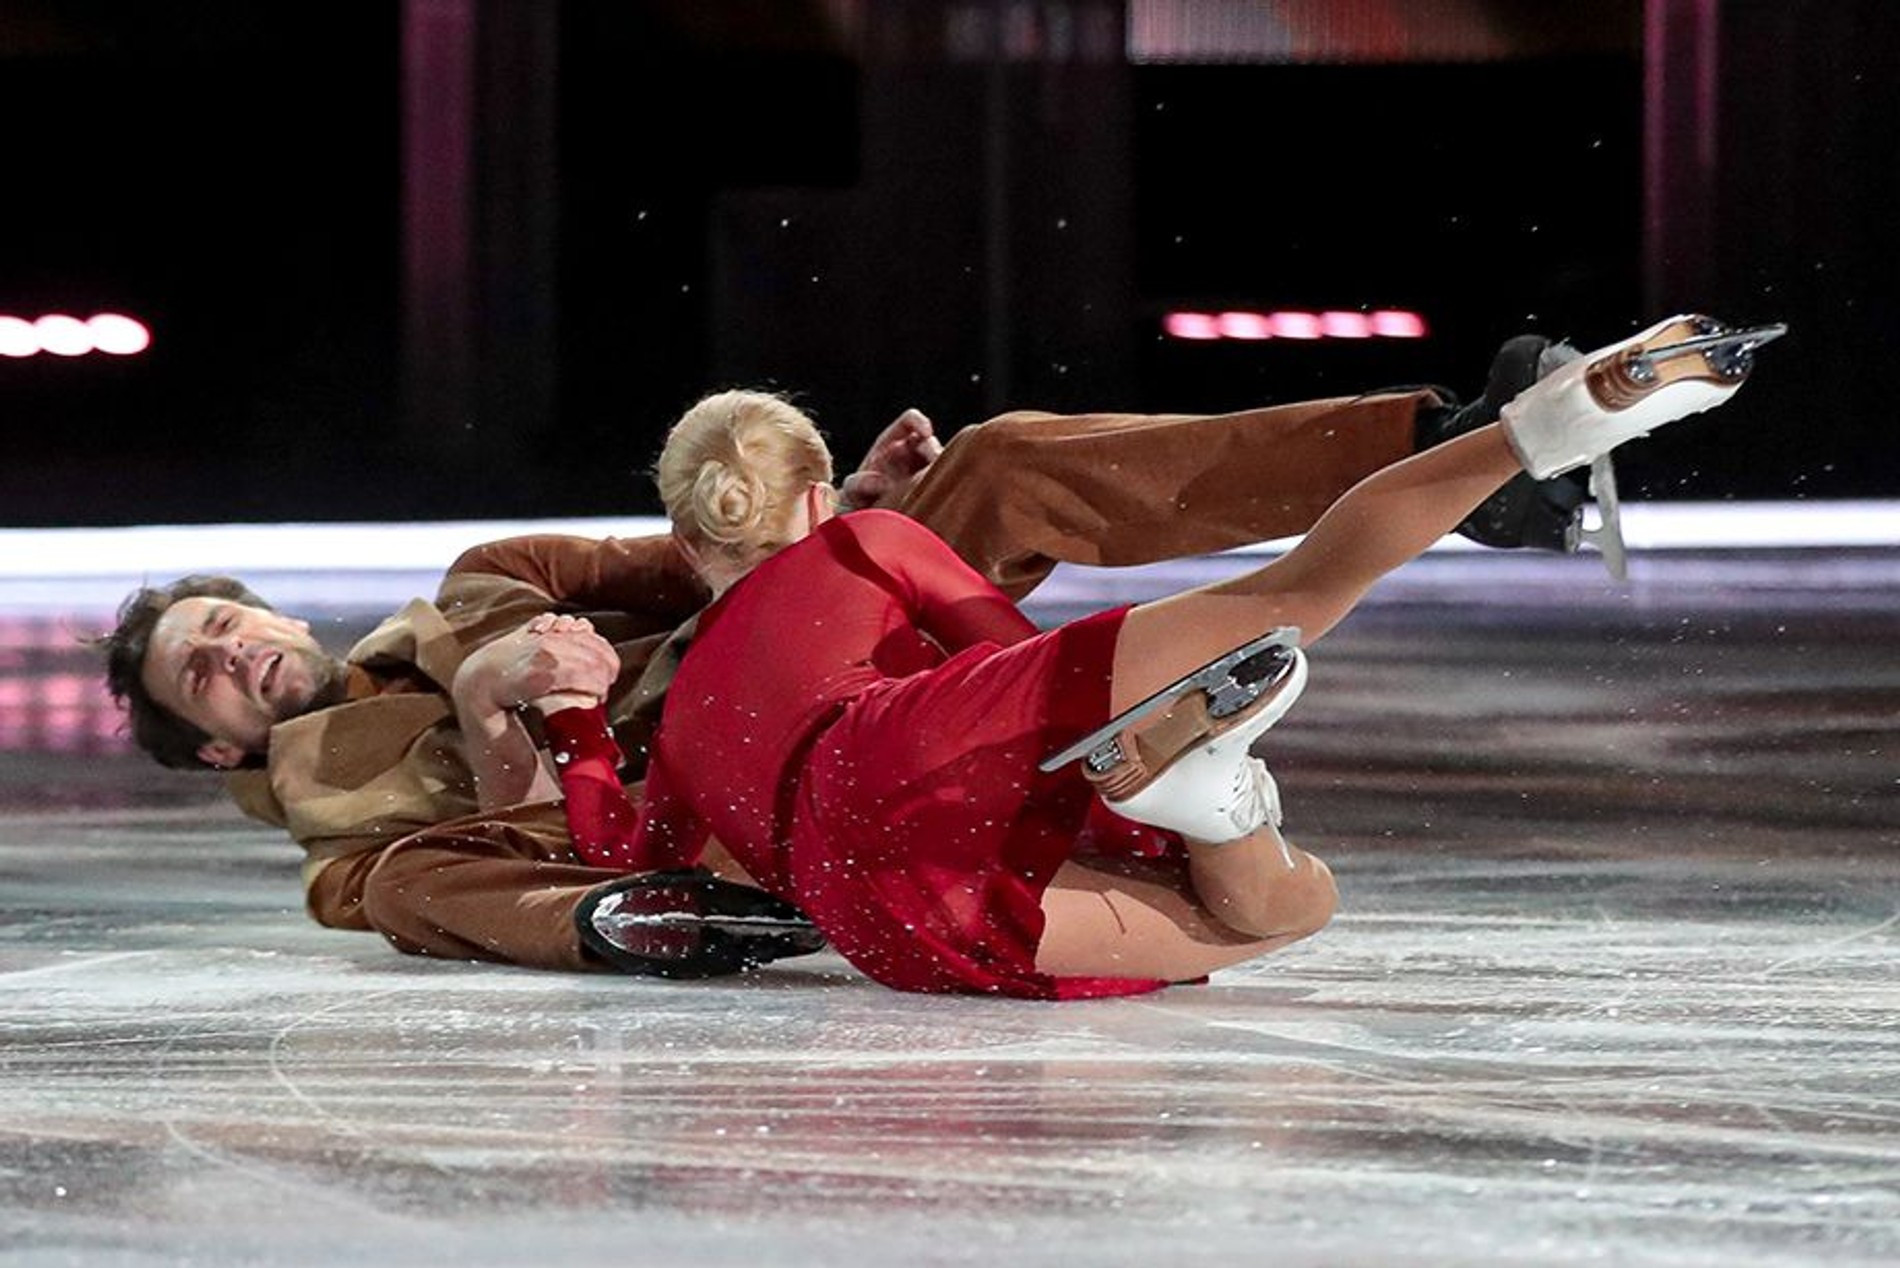 Татьяна Тотьмянина и Иван Колексников упали на льду на съемках «Ледникового периода»
Фото: «Чемпионат»